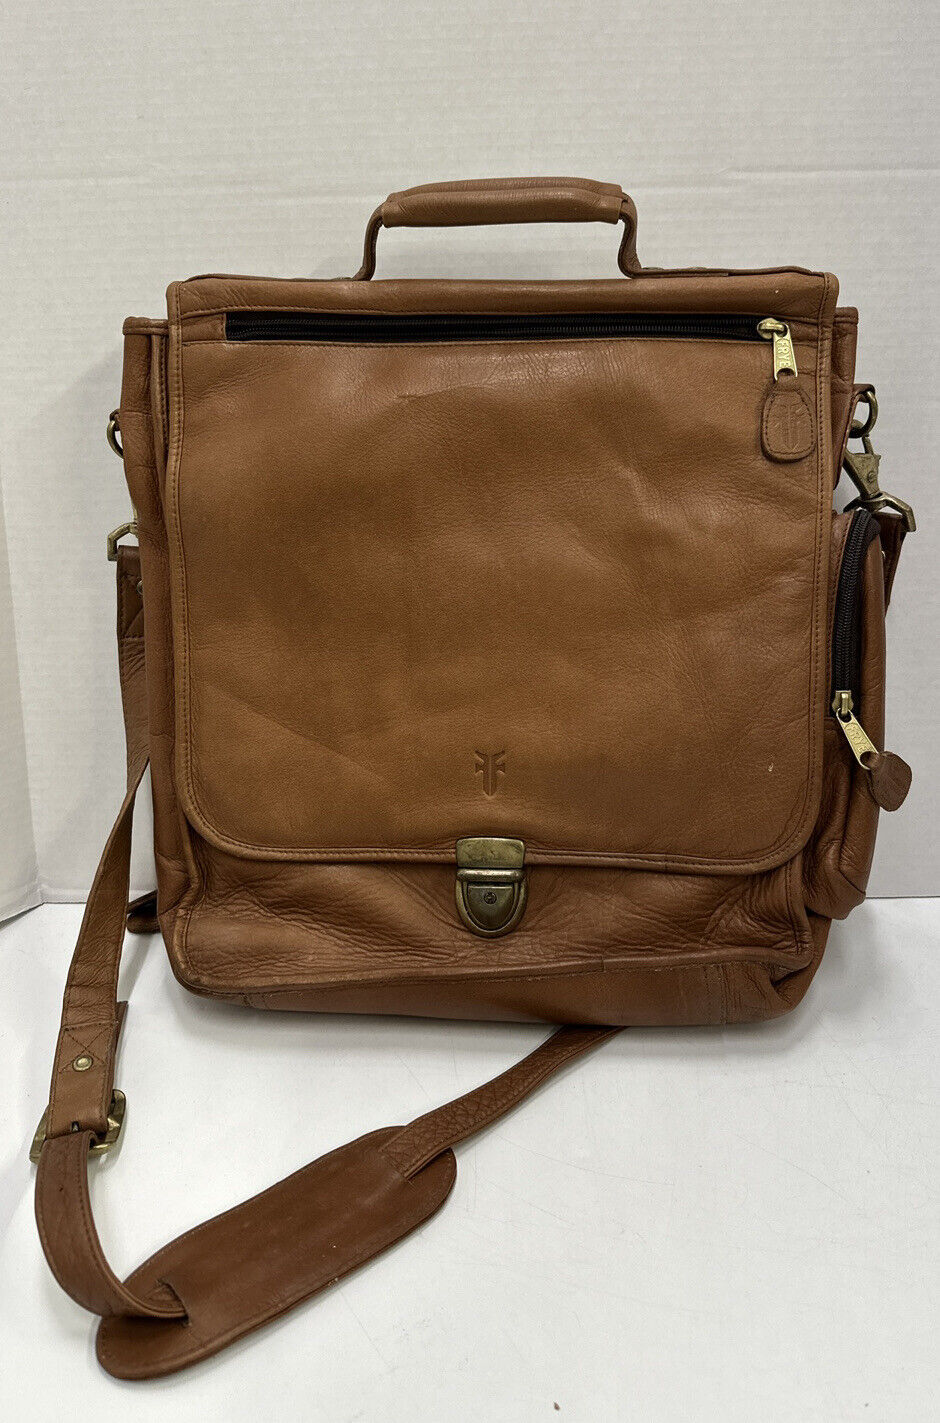 Vintage~FRYE~Men’s Messenger Bag~Top Handle / Shoulder Bag~ Brown Leather